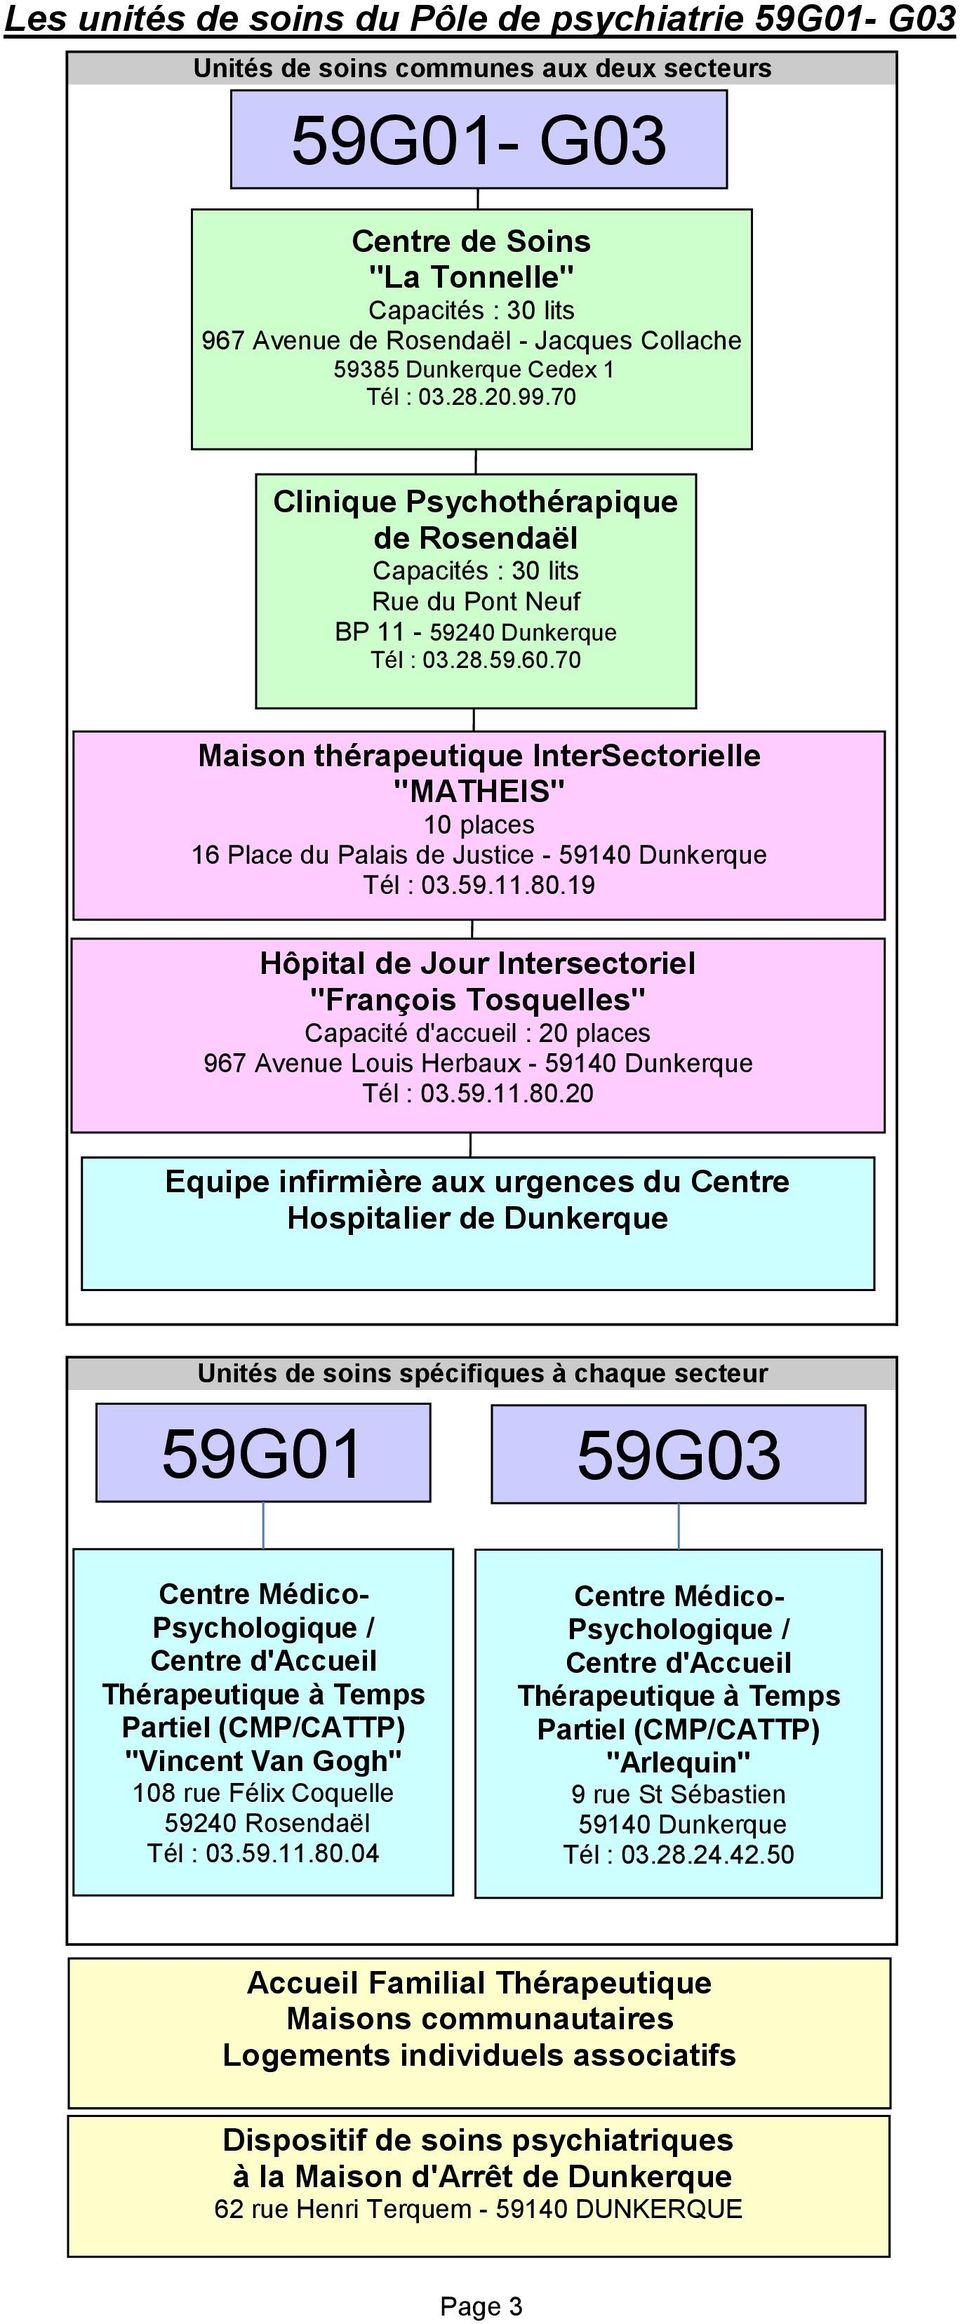 70 Maison thérapeutique InterSectorielle Accueillir, "MATHEIS" 10 places 16 Place du Palais de Justice - 59140 Dunkerque Tél : 03.59.11.80.